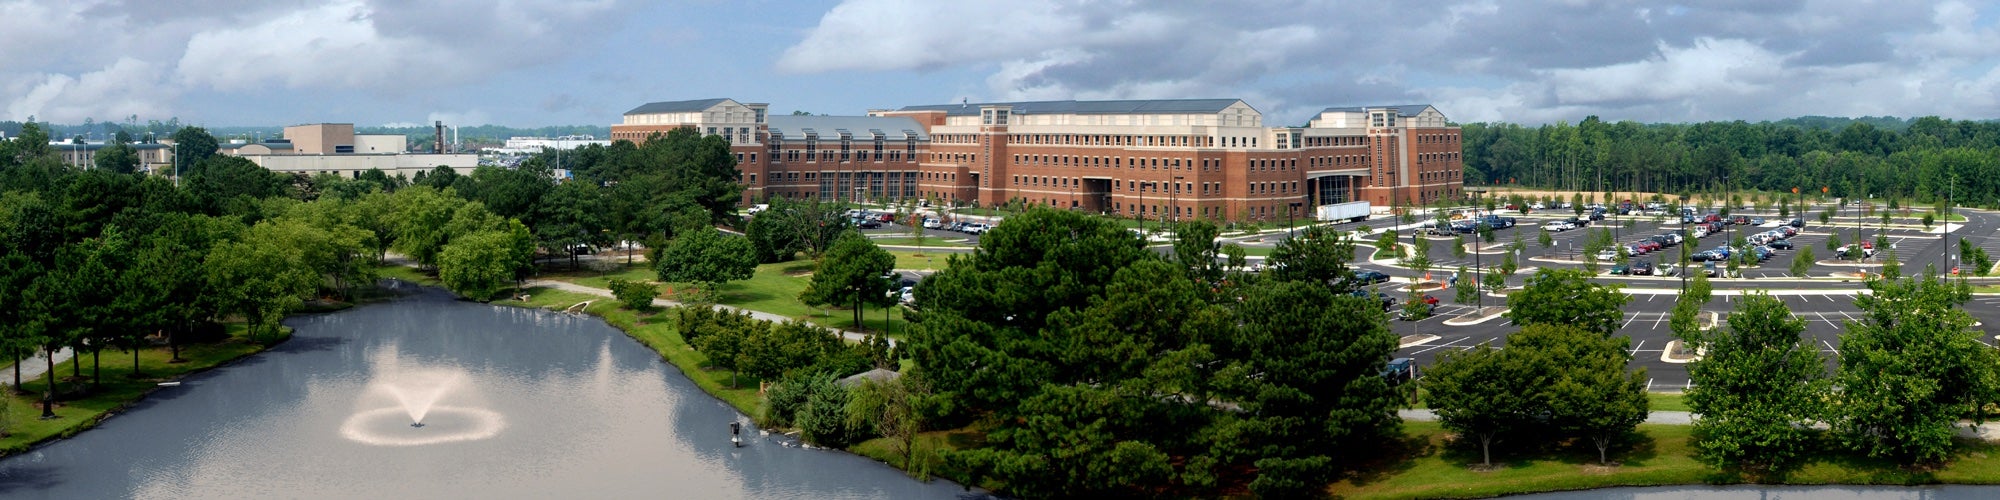 Panorama of Health Sciences Campus